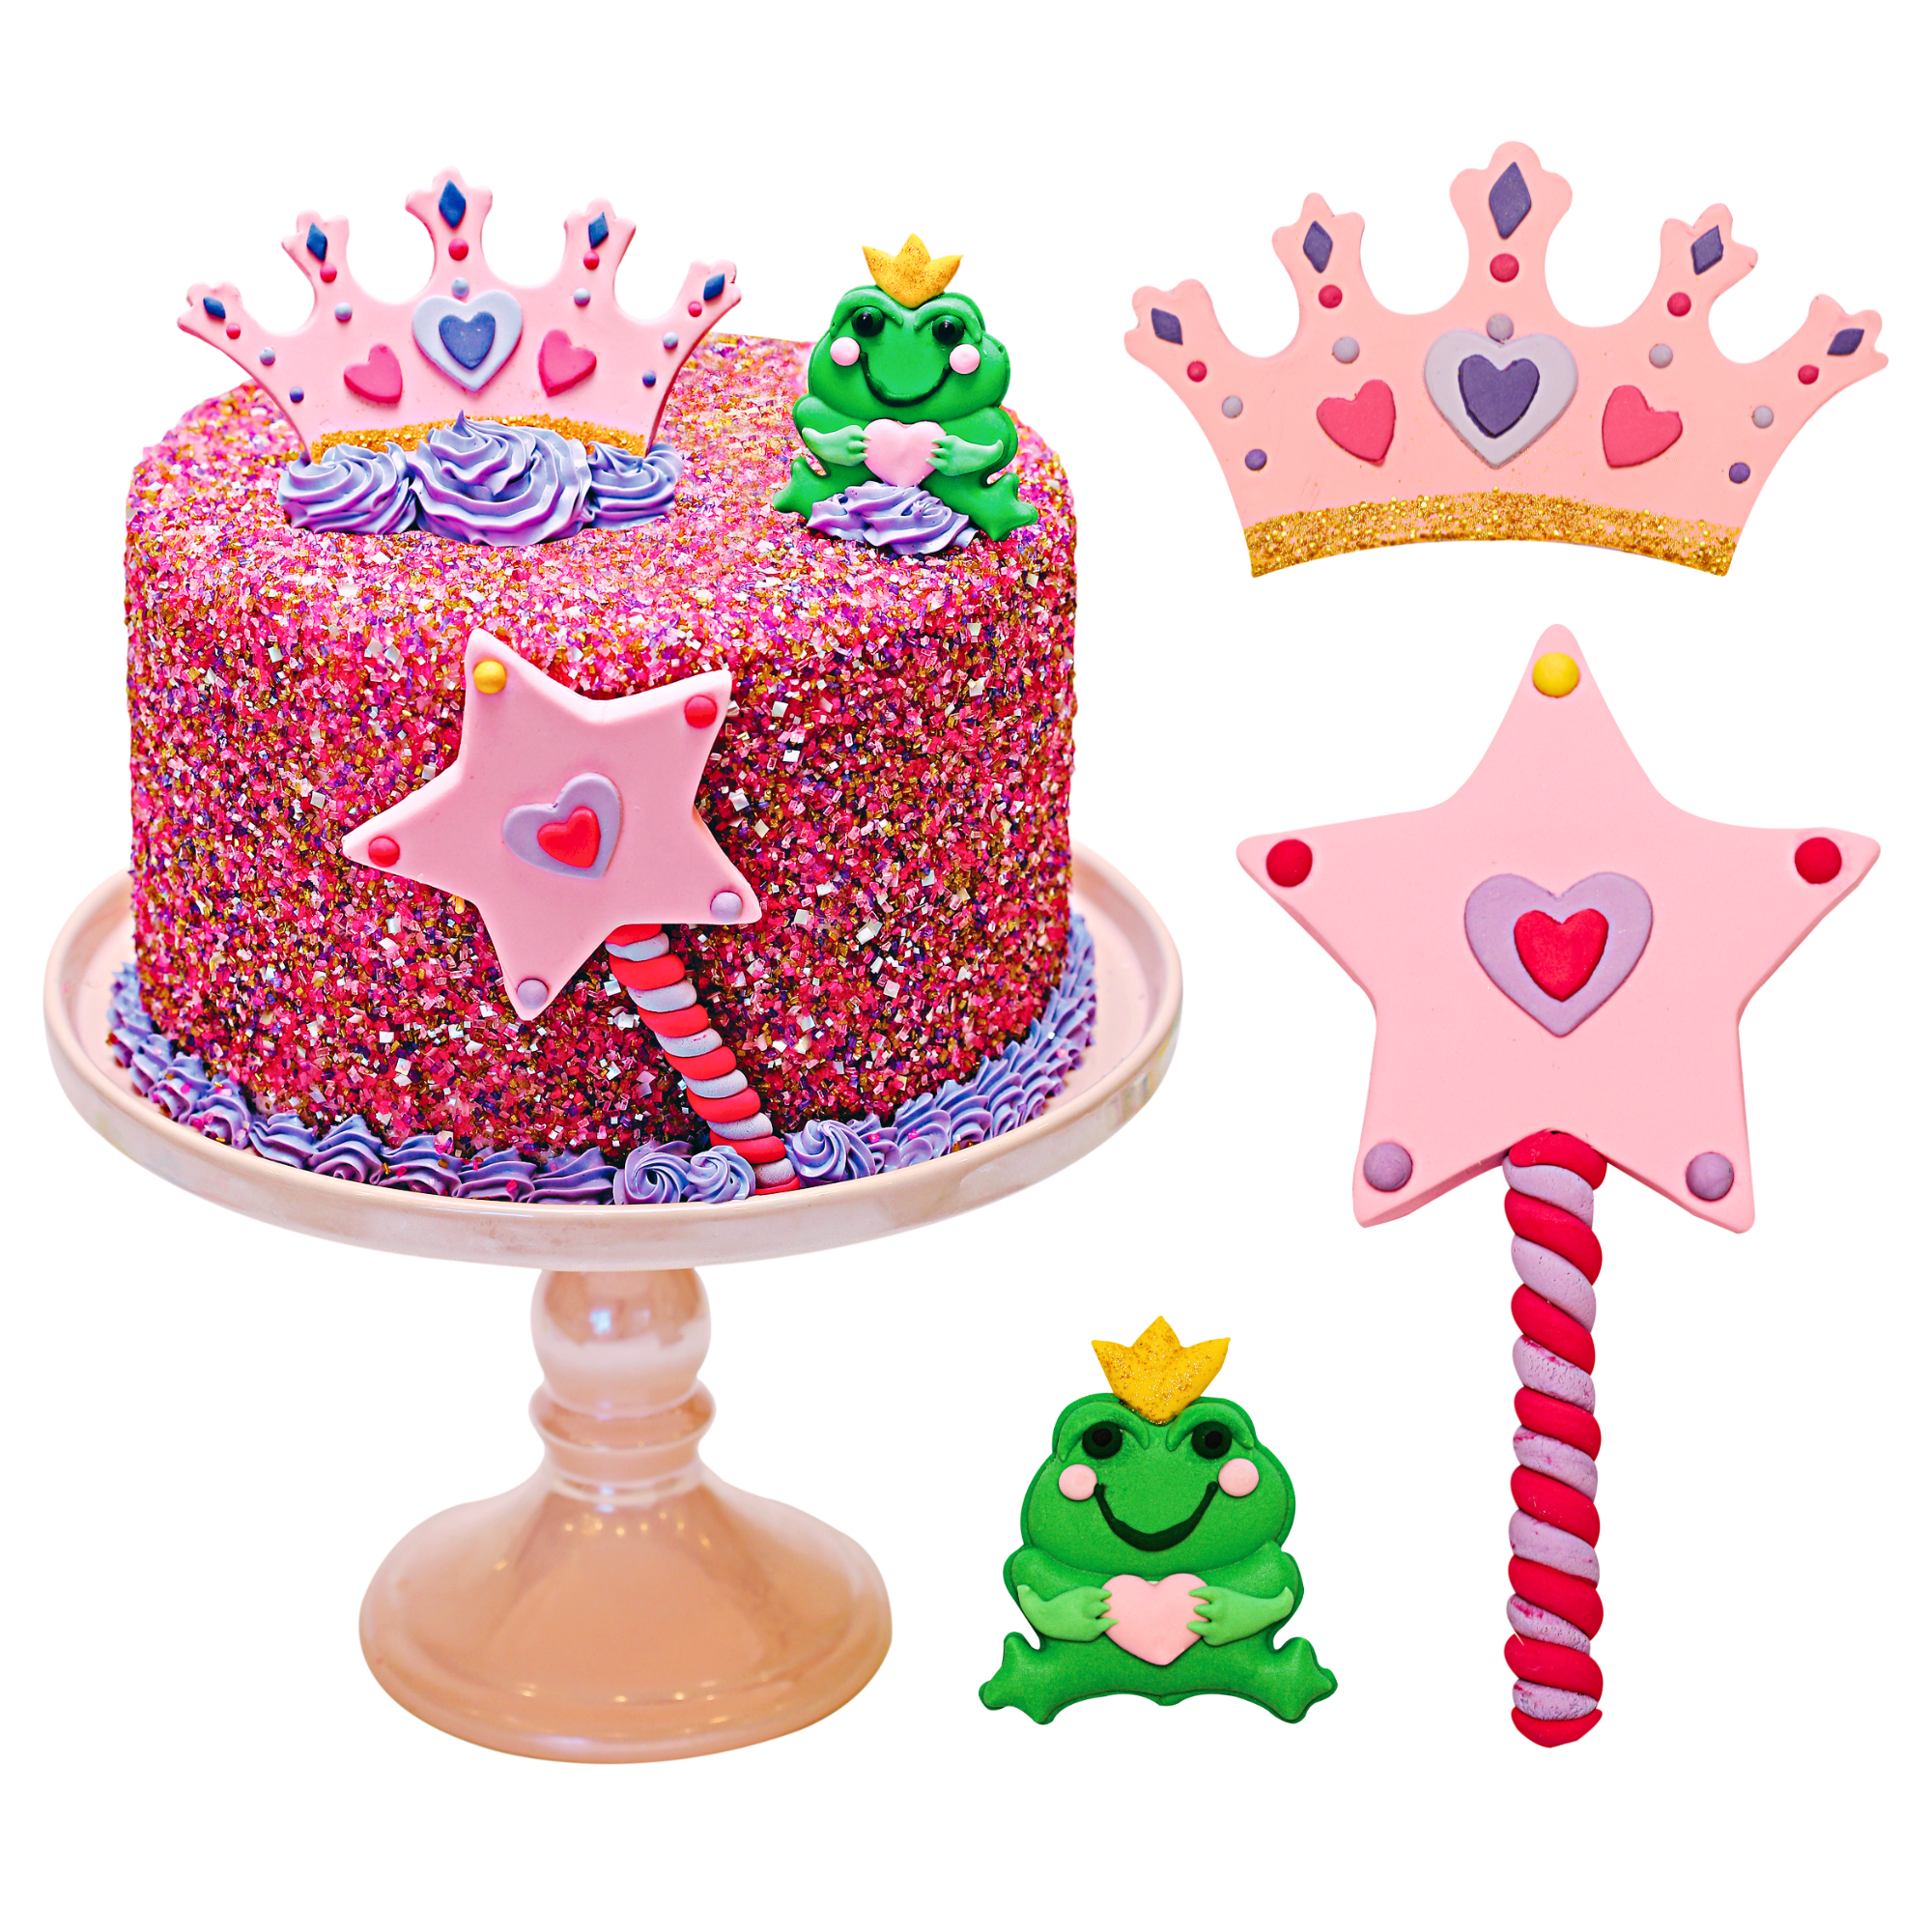 Princess & Frog Designer Cake Decor